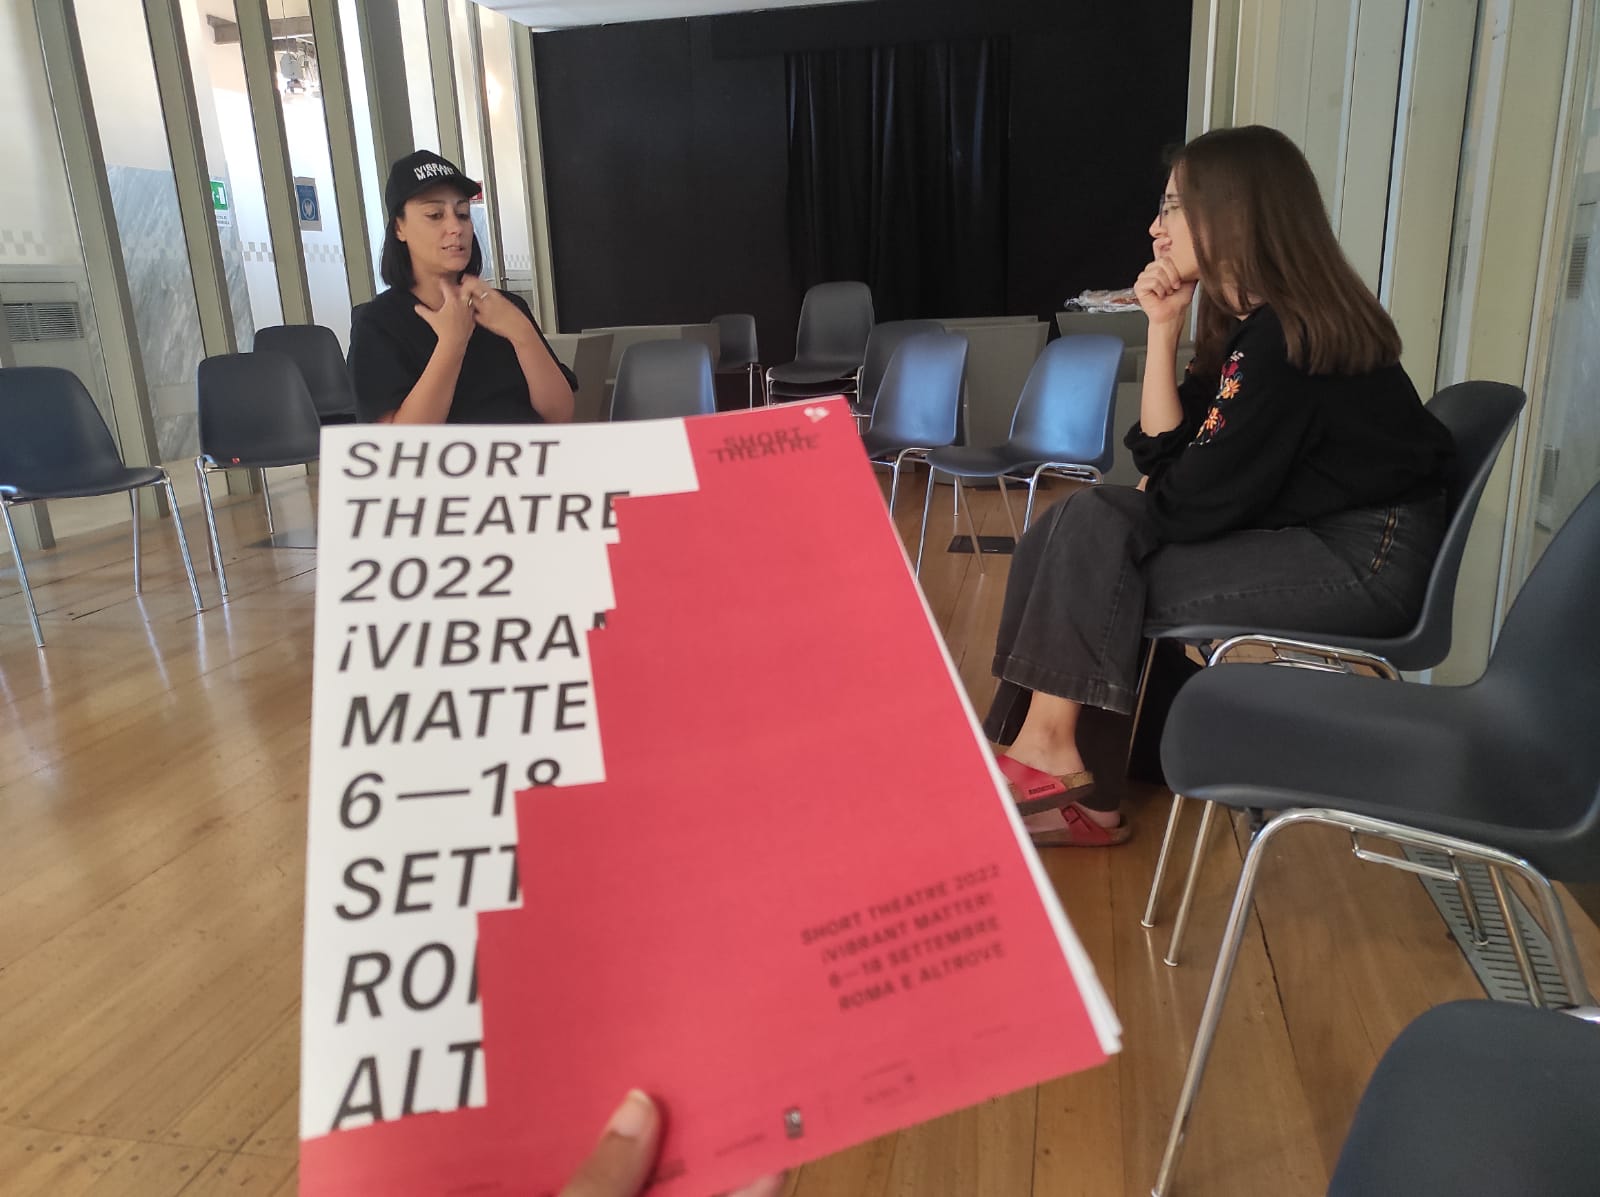 Intervista della Redazione U25 alla Direttrice artistica Piersandra Di Matteo, Short Theatre 2022